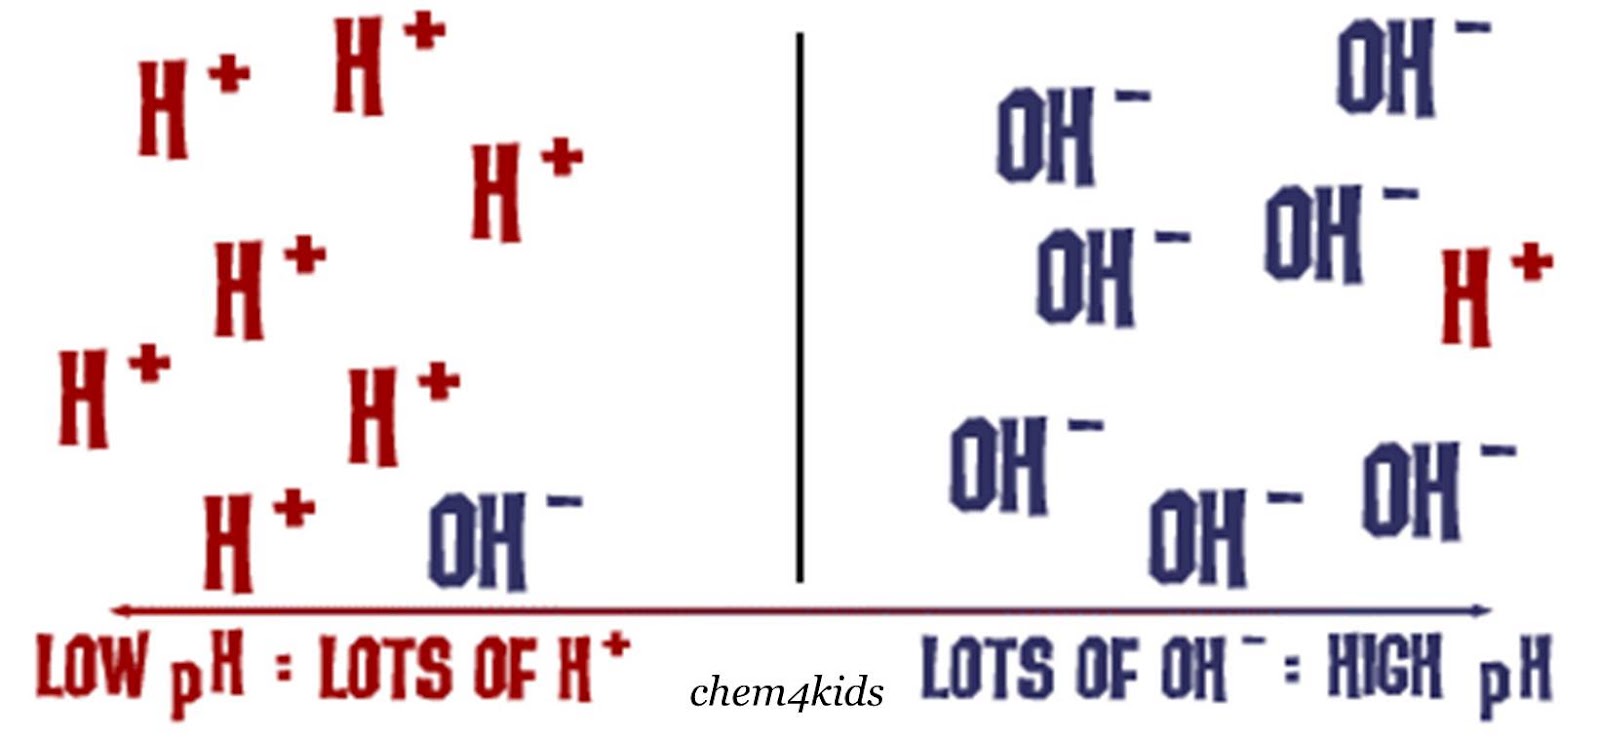 hydrogen+vs+hydroxide.jpg